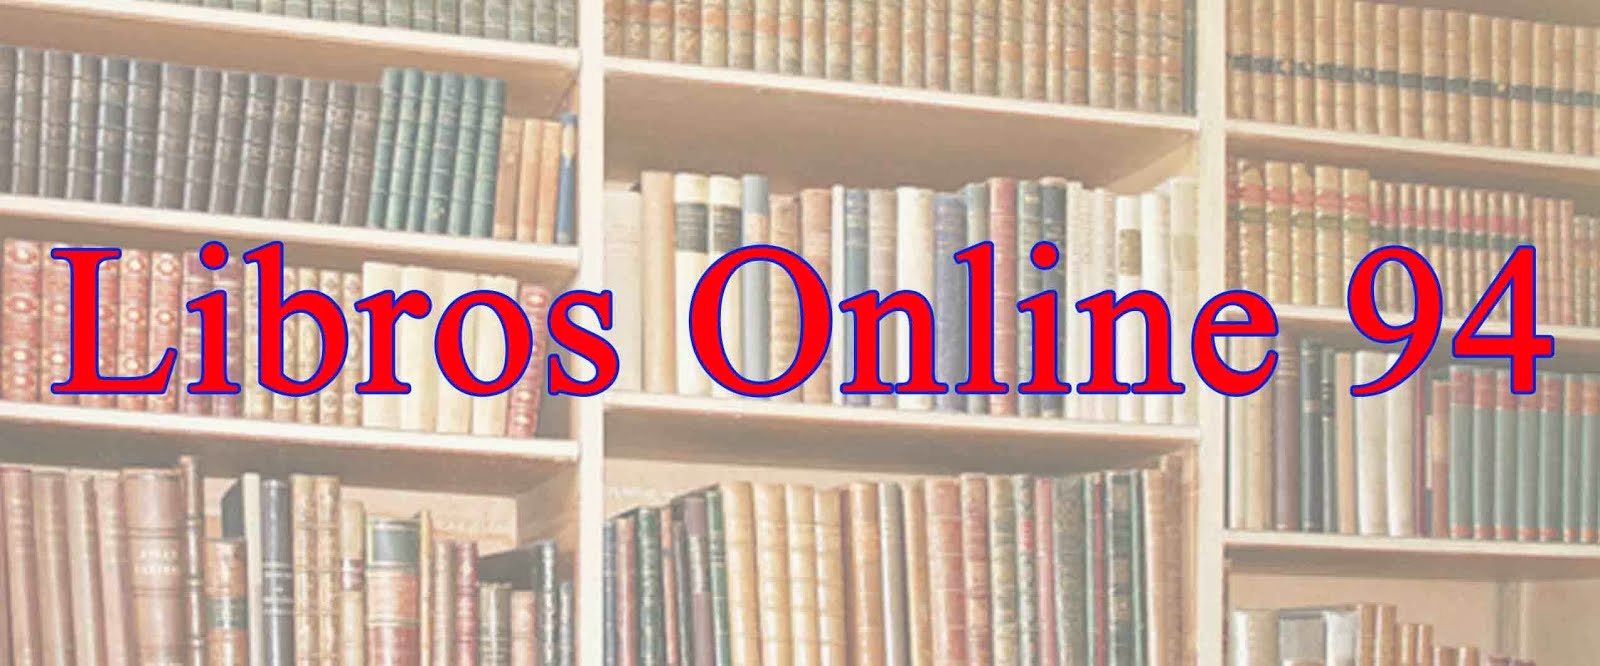 Libros online